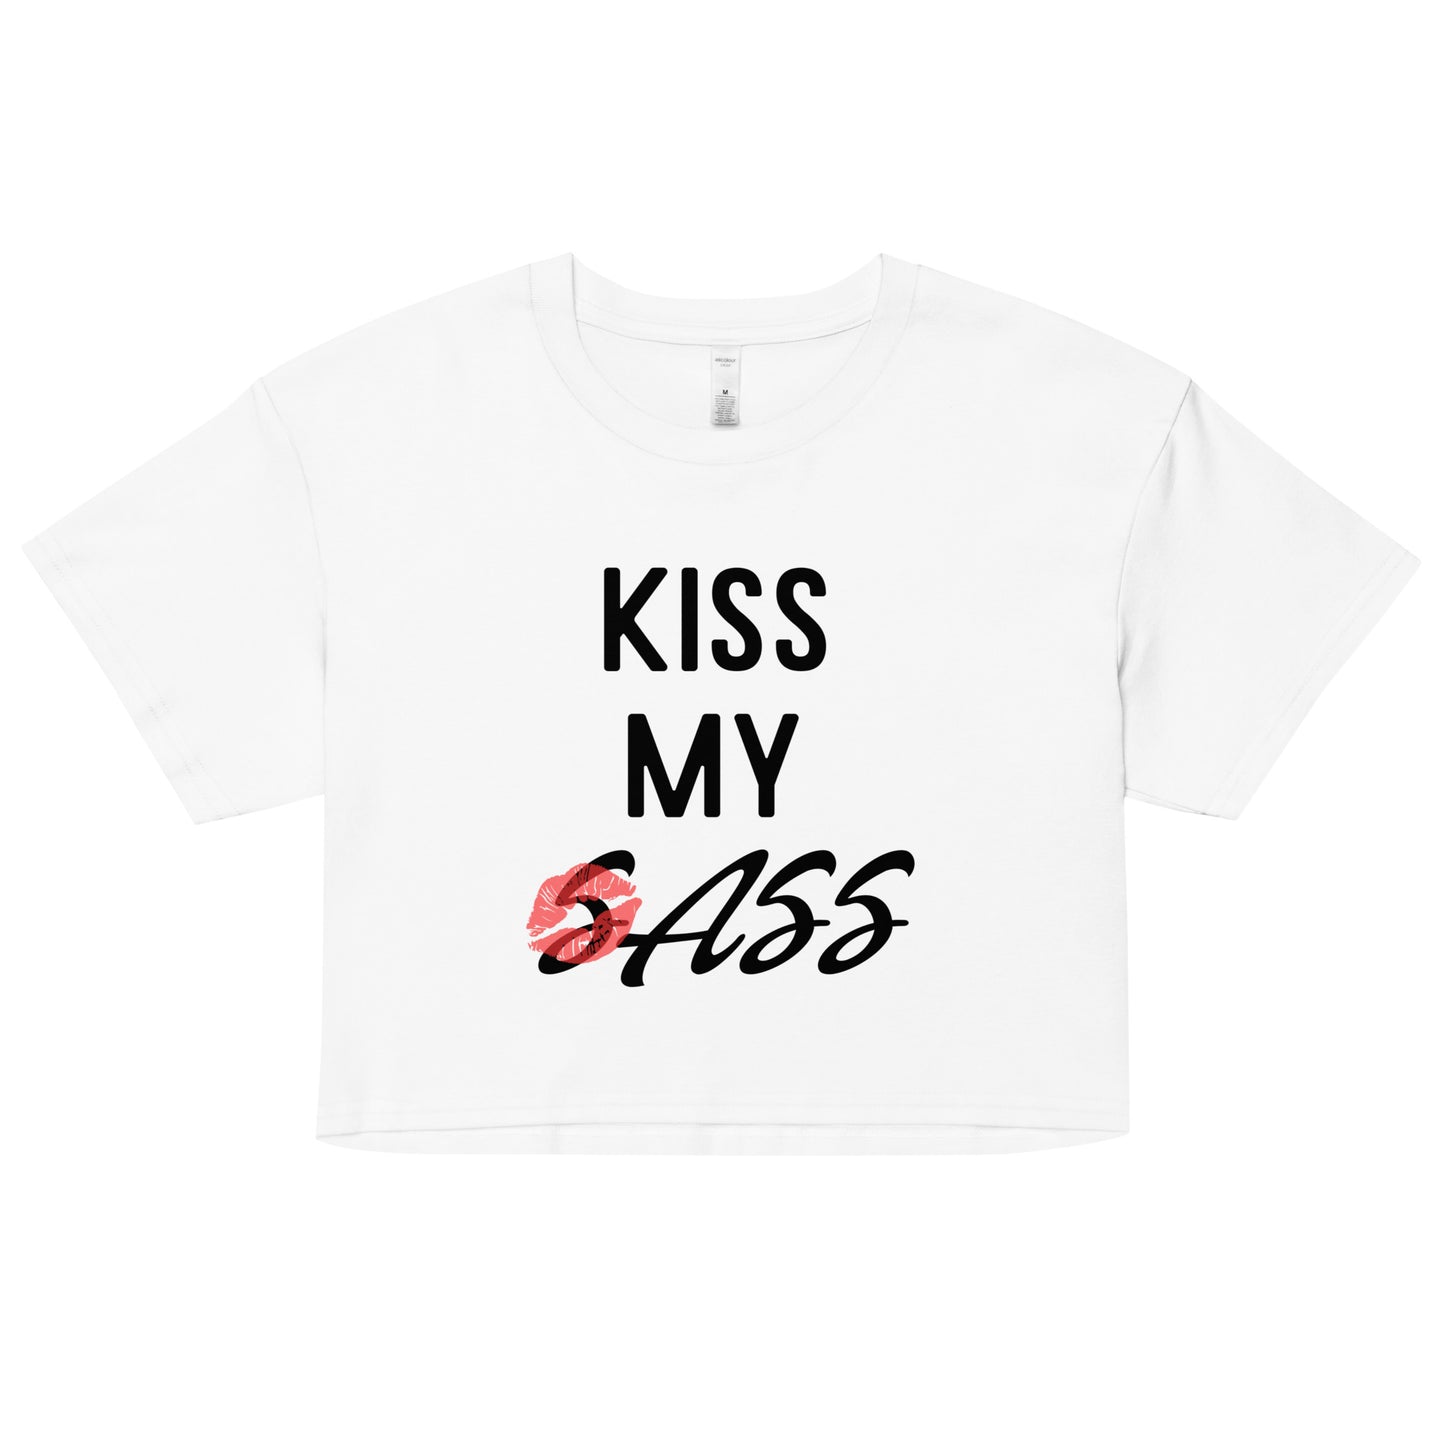 Kiss my sass crop top